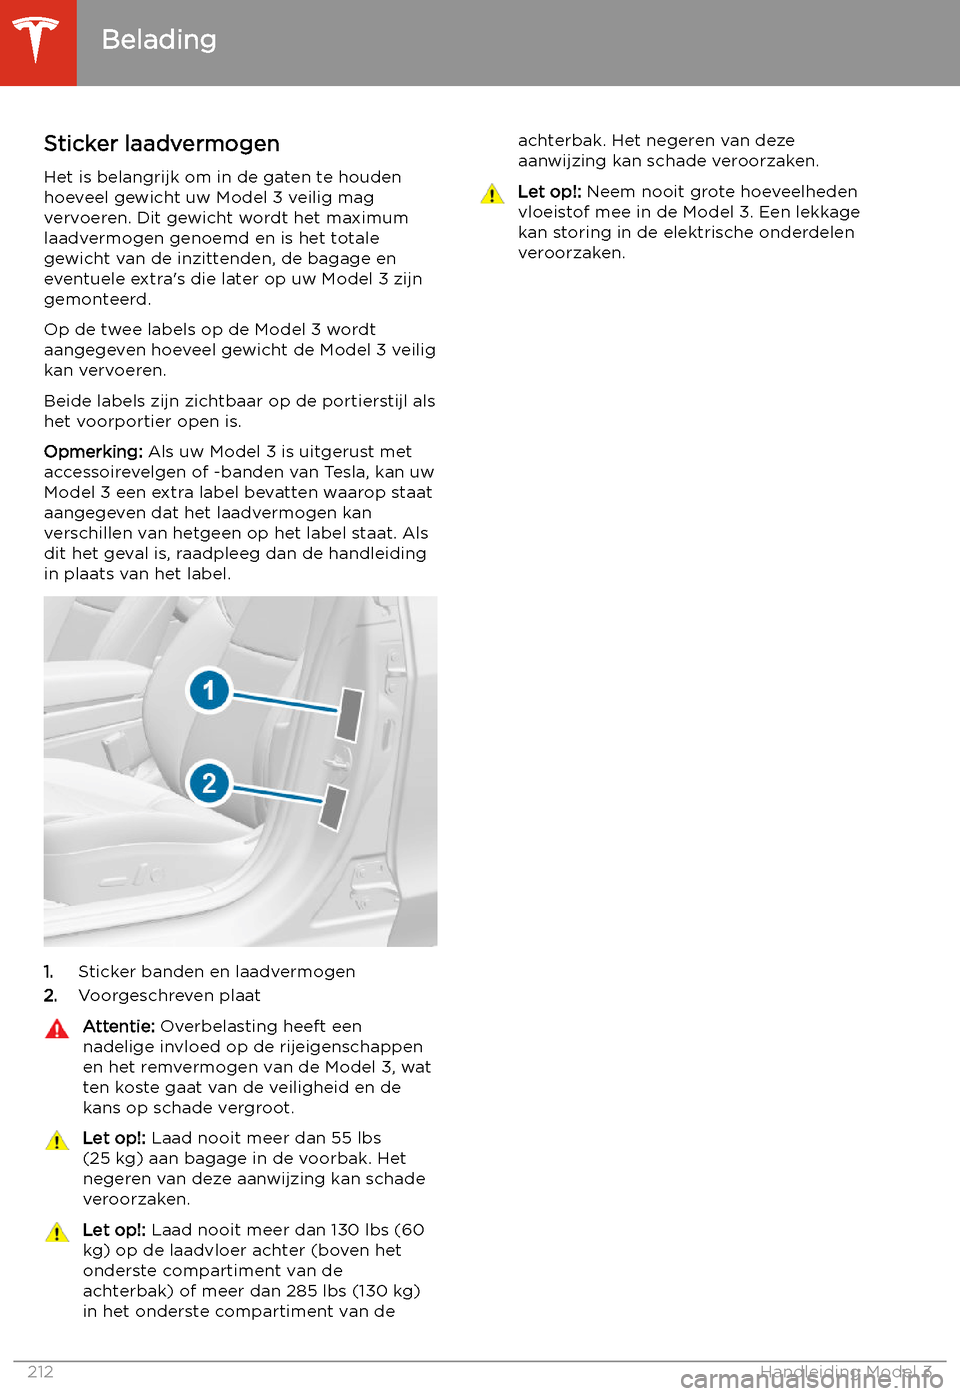 TESLA MODEL 3 2020  Handleiding (in Dutch) Belading
Sticker laadvermogen
Het is belangrijk om in de gaten te houden hoeveel gewicht uw Model 3 veilig mag
vervoeren. Dit gewicht wordt het maximum
laadvermogen genoemd en is het totale gewicht va